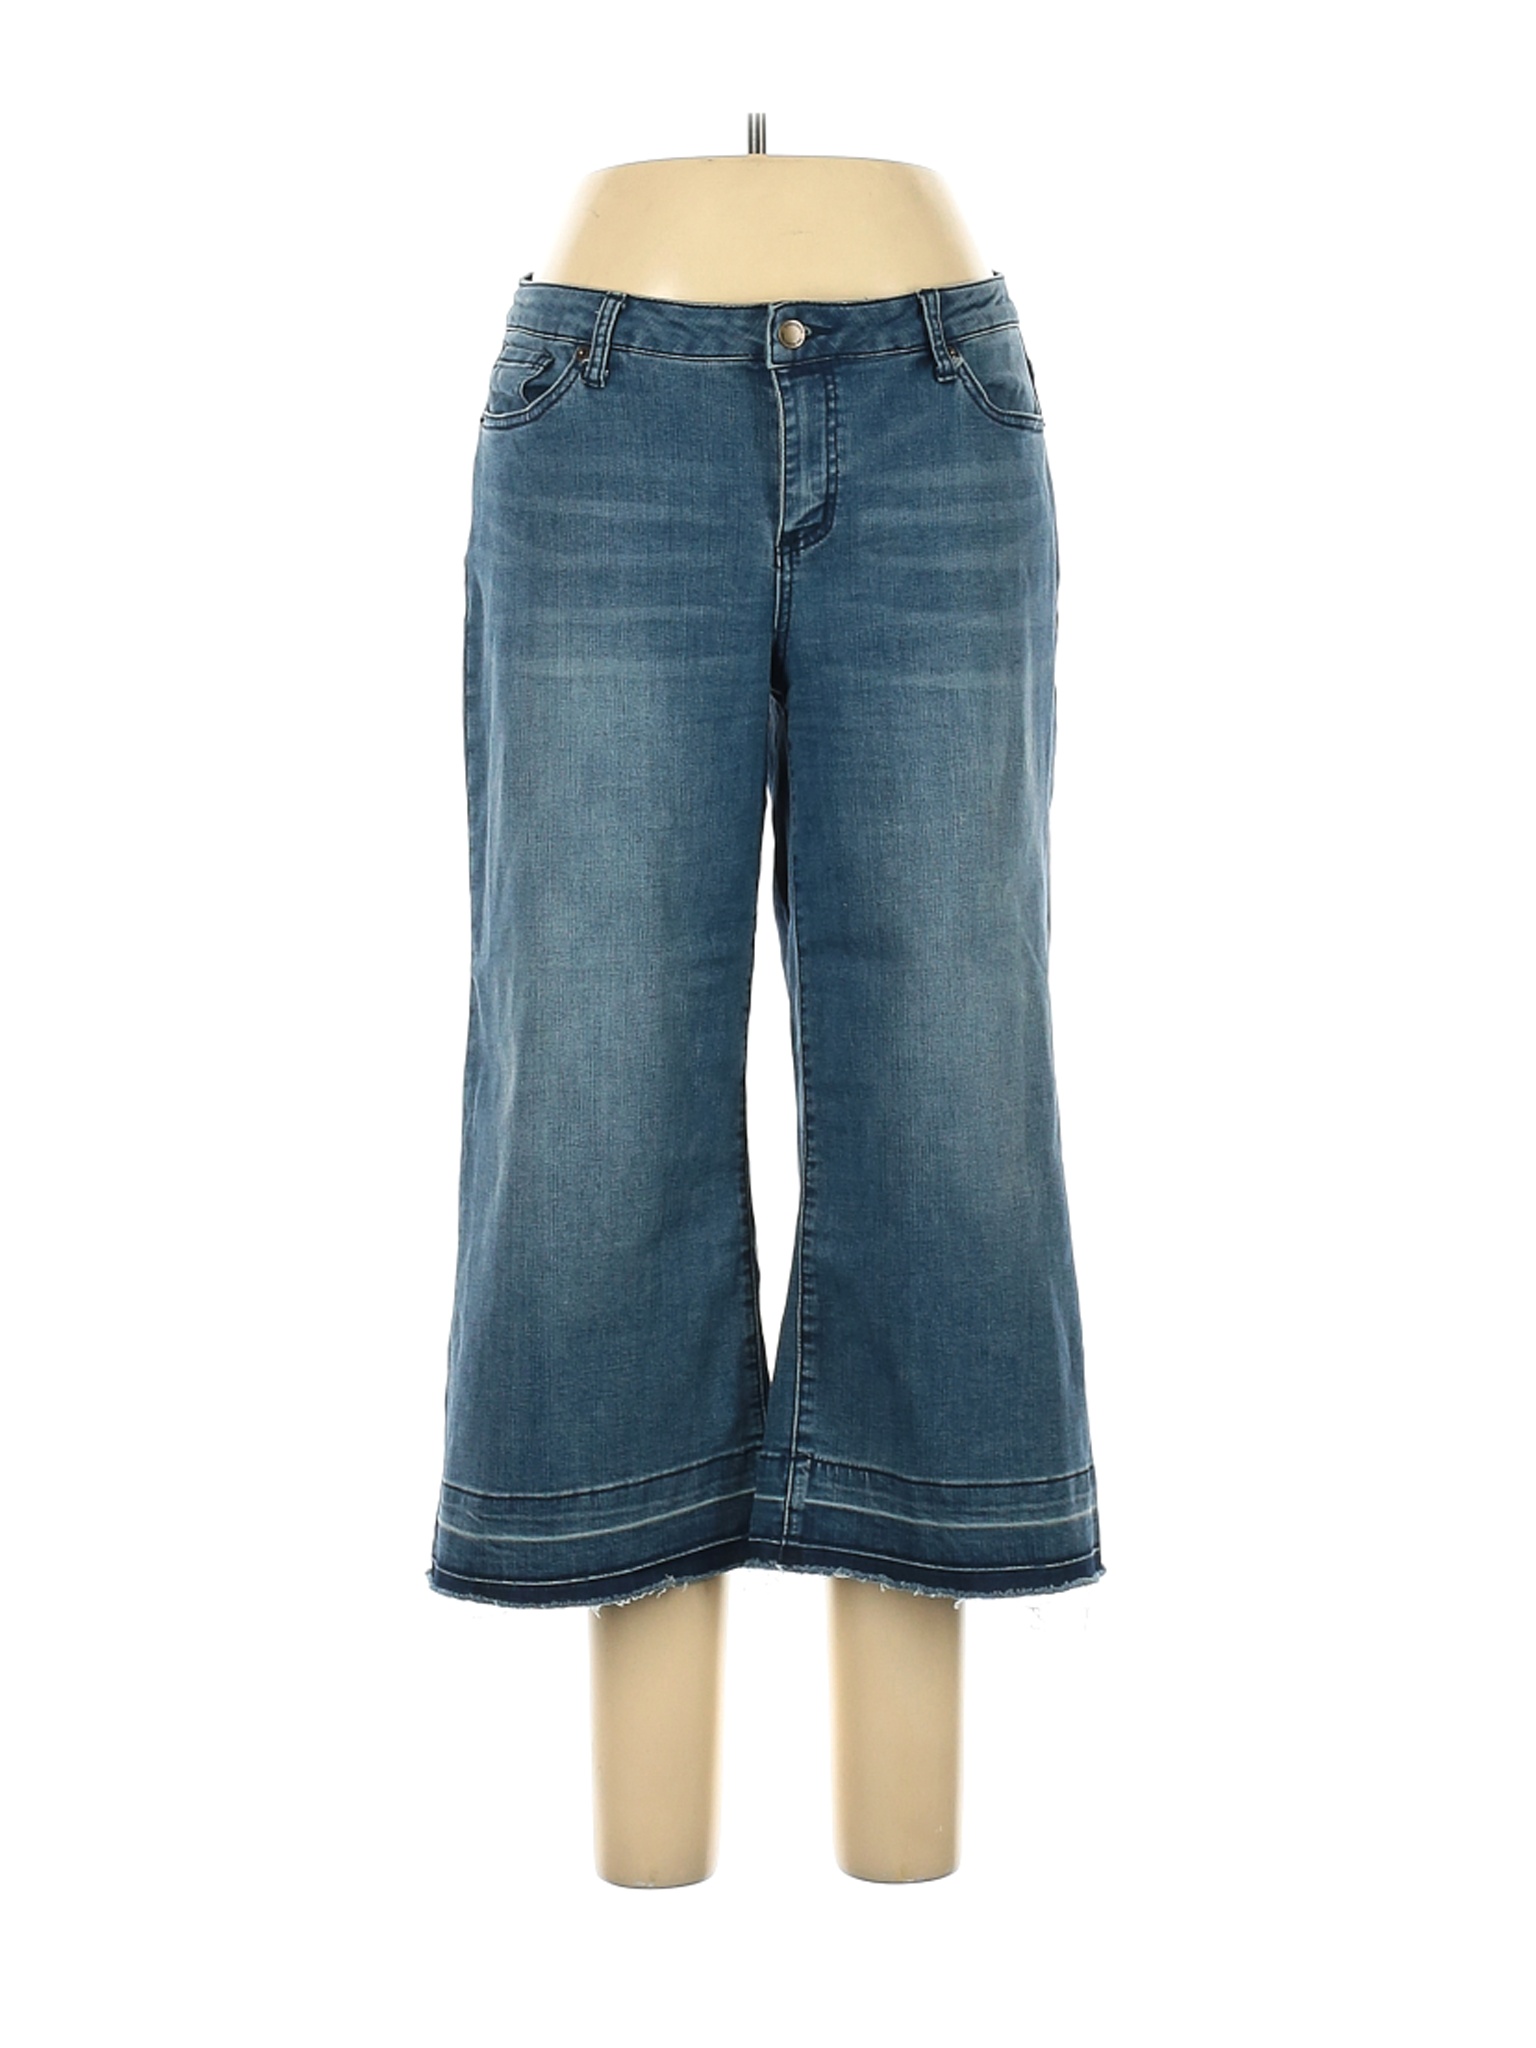 Westport Women Green Jeans 10 | eBay